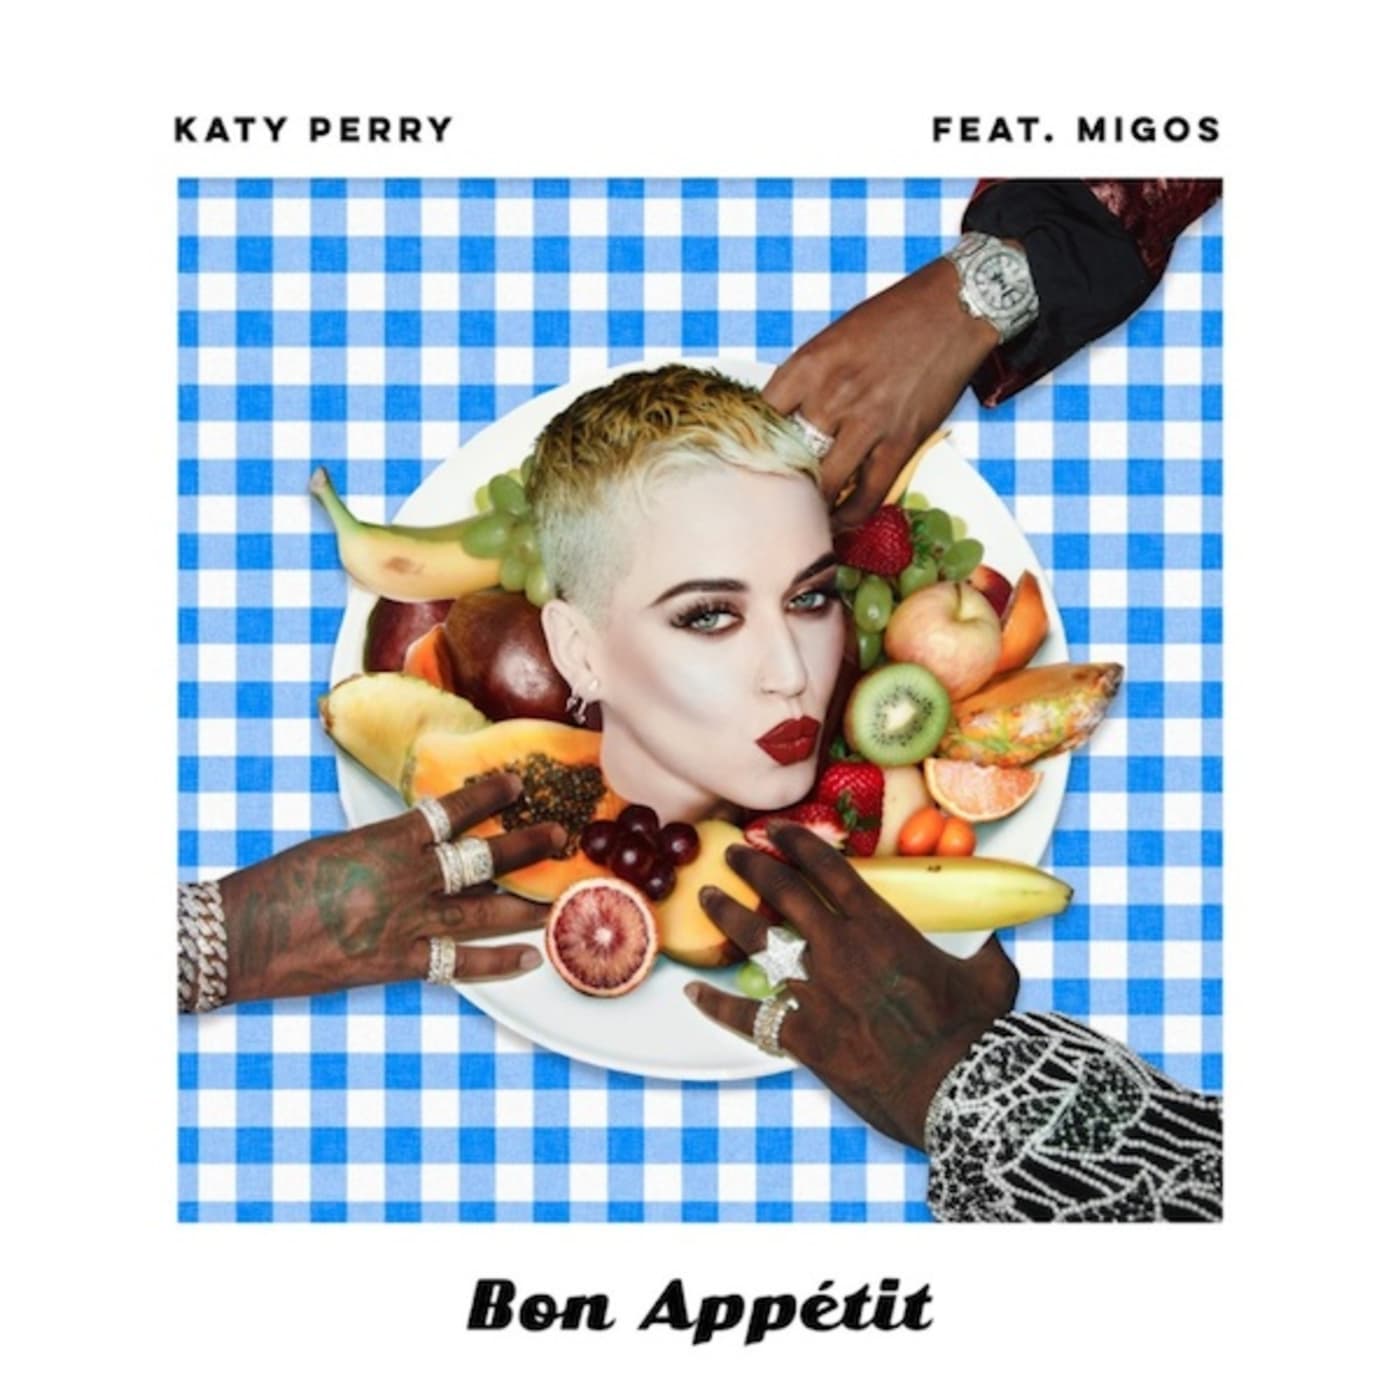 Katy Perry "Bon Appétit" f/ Migos